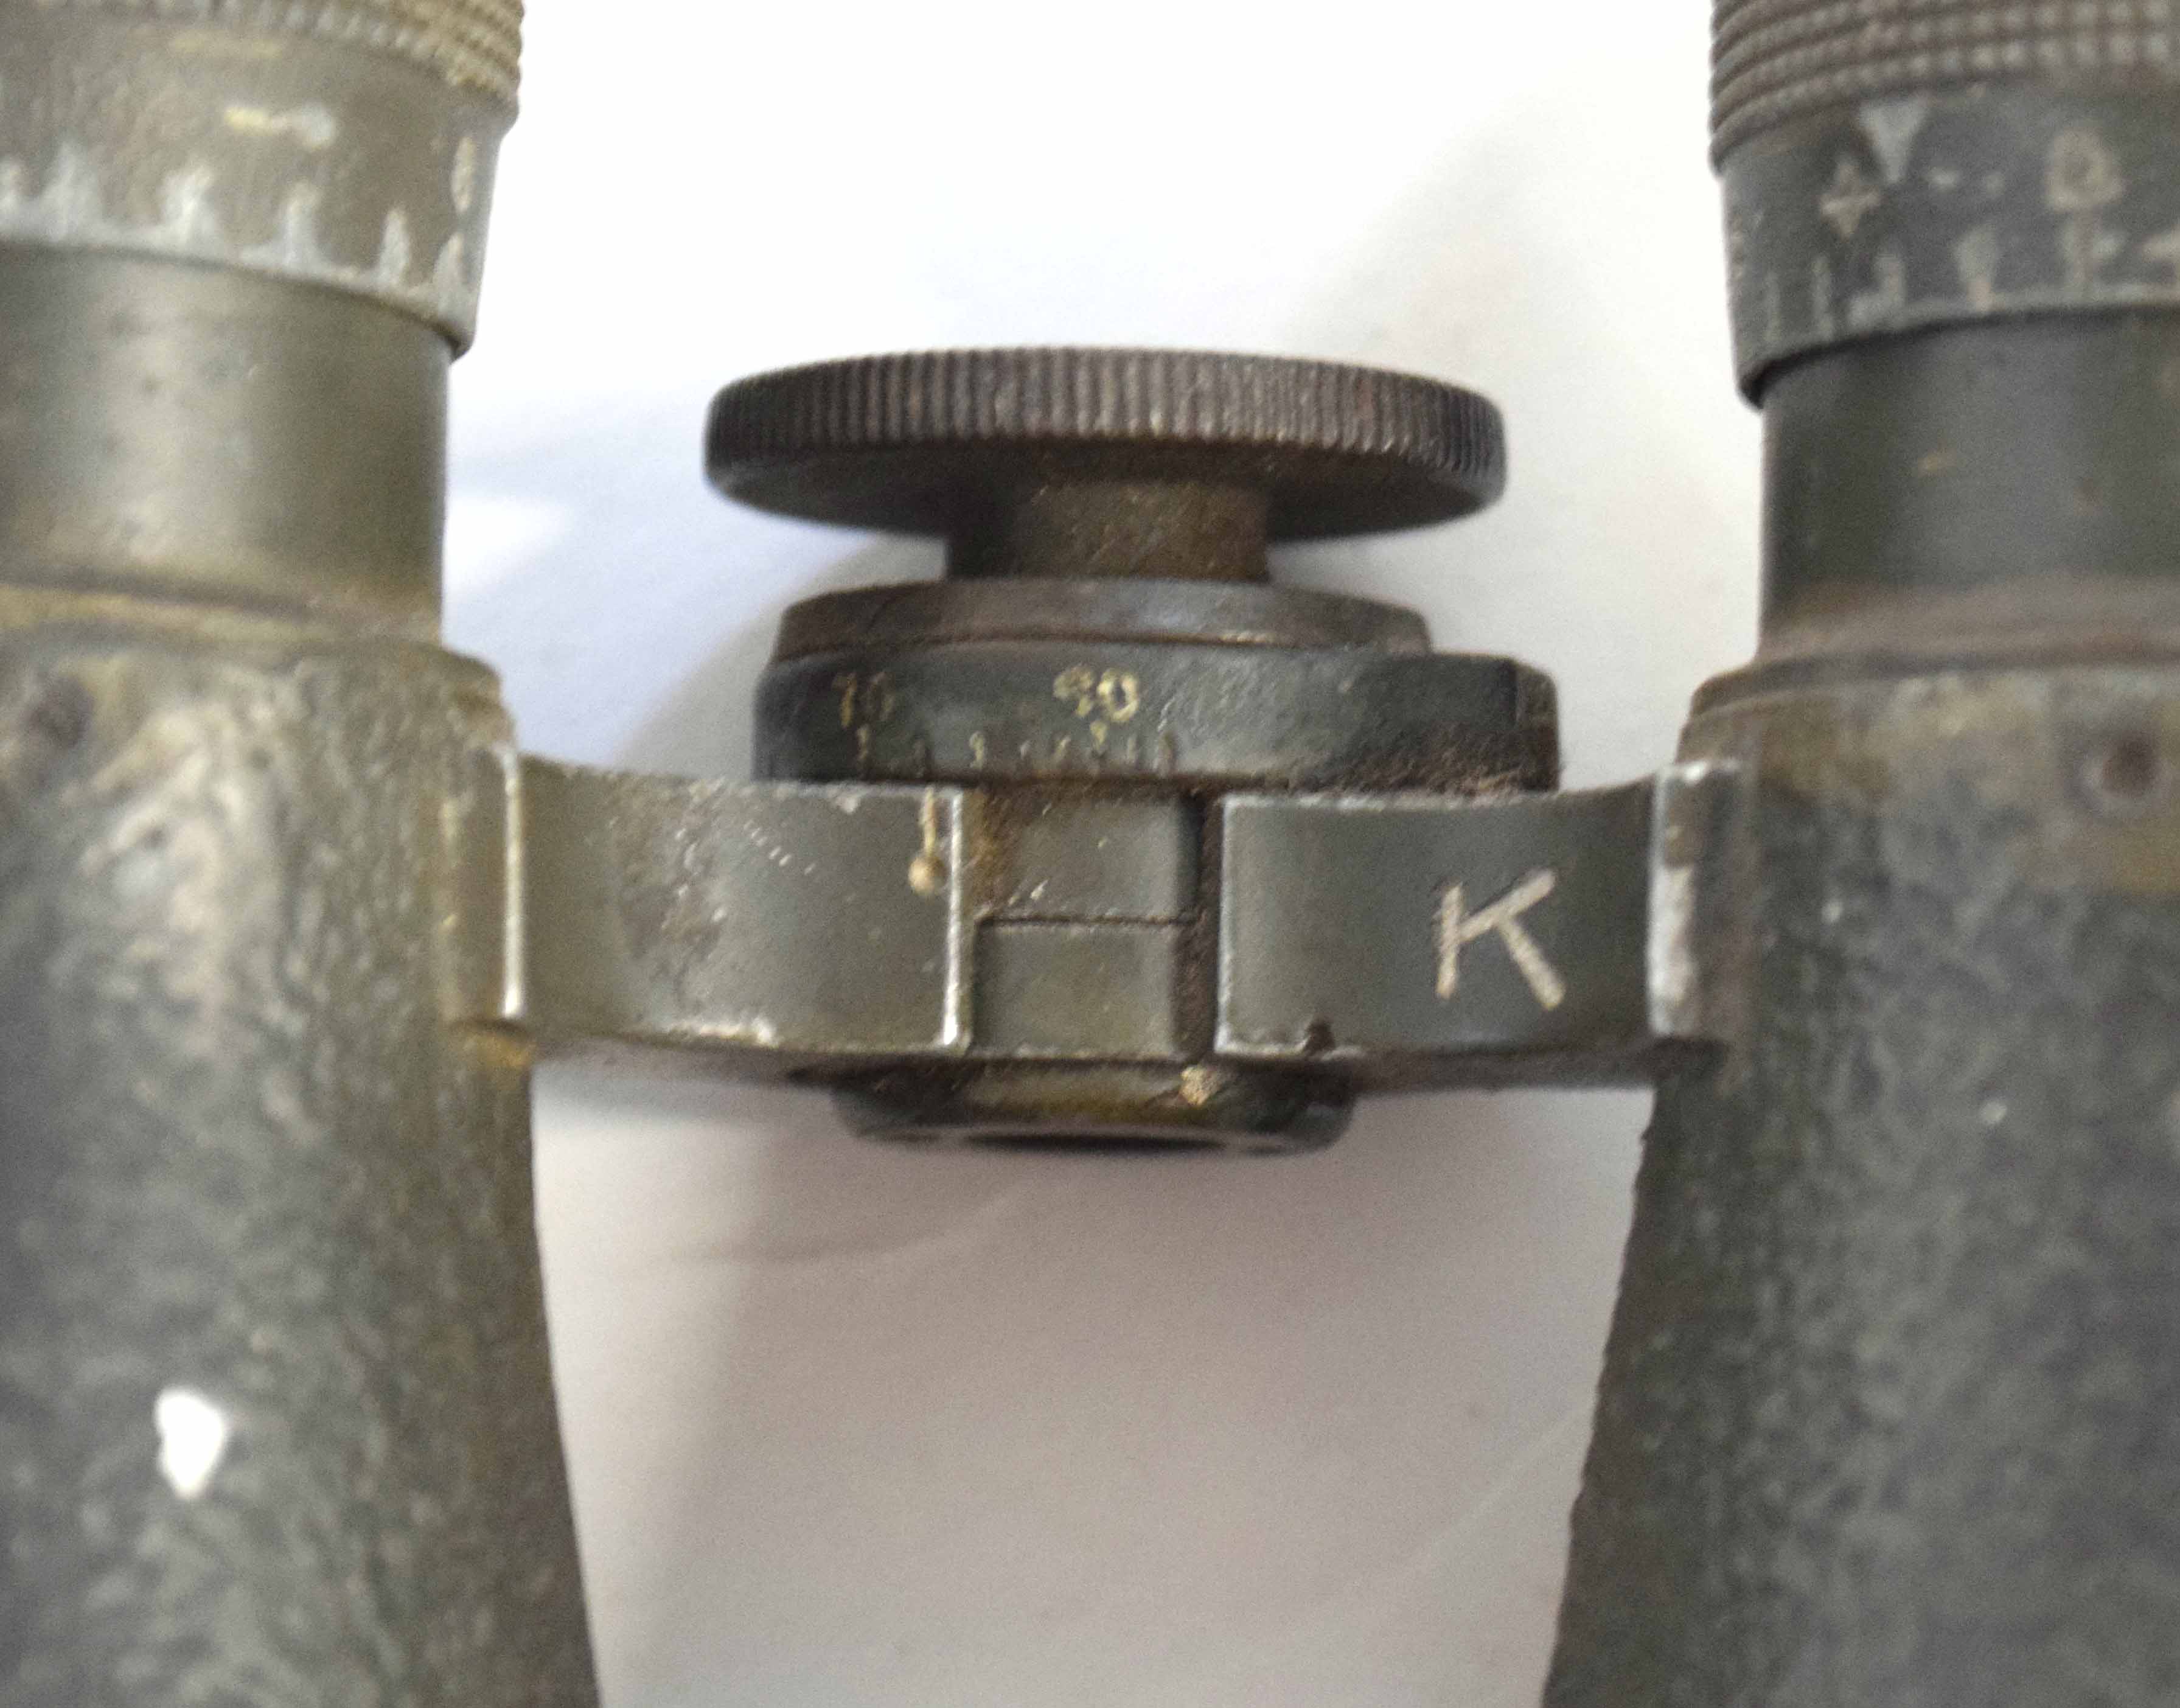 Pair of WWI period Imperial German Fernglas binoculars, maker's mark on focus wheel "Fernglas 08 - Image 3 of 4